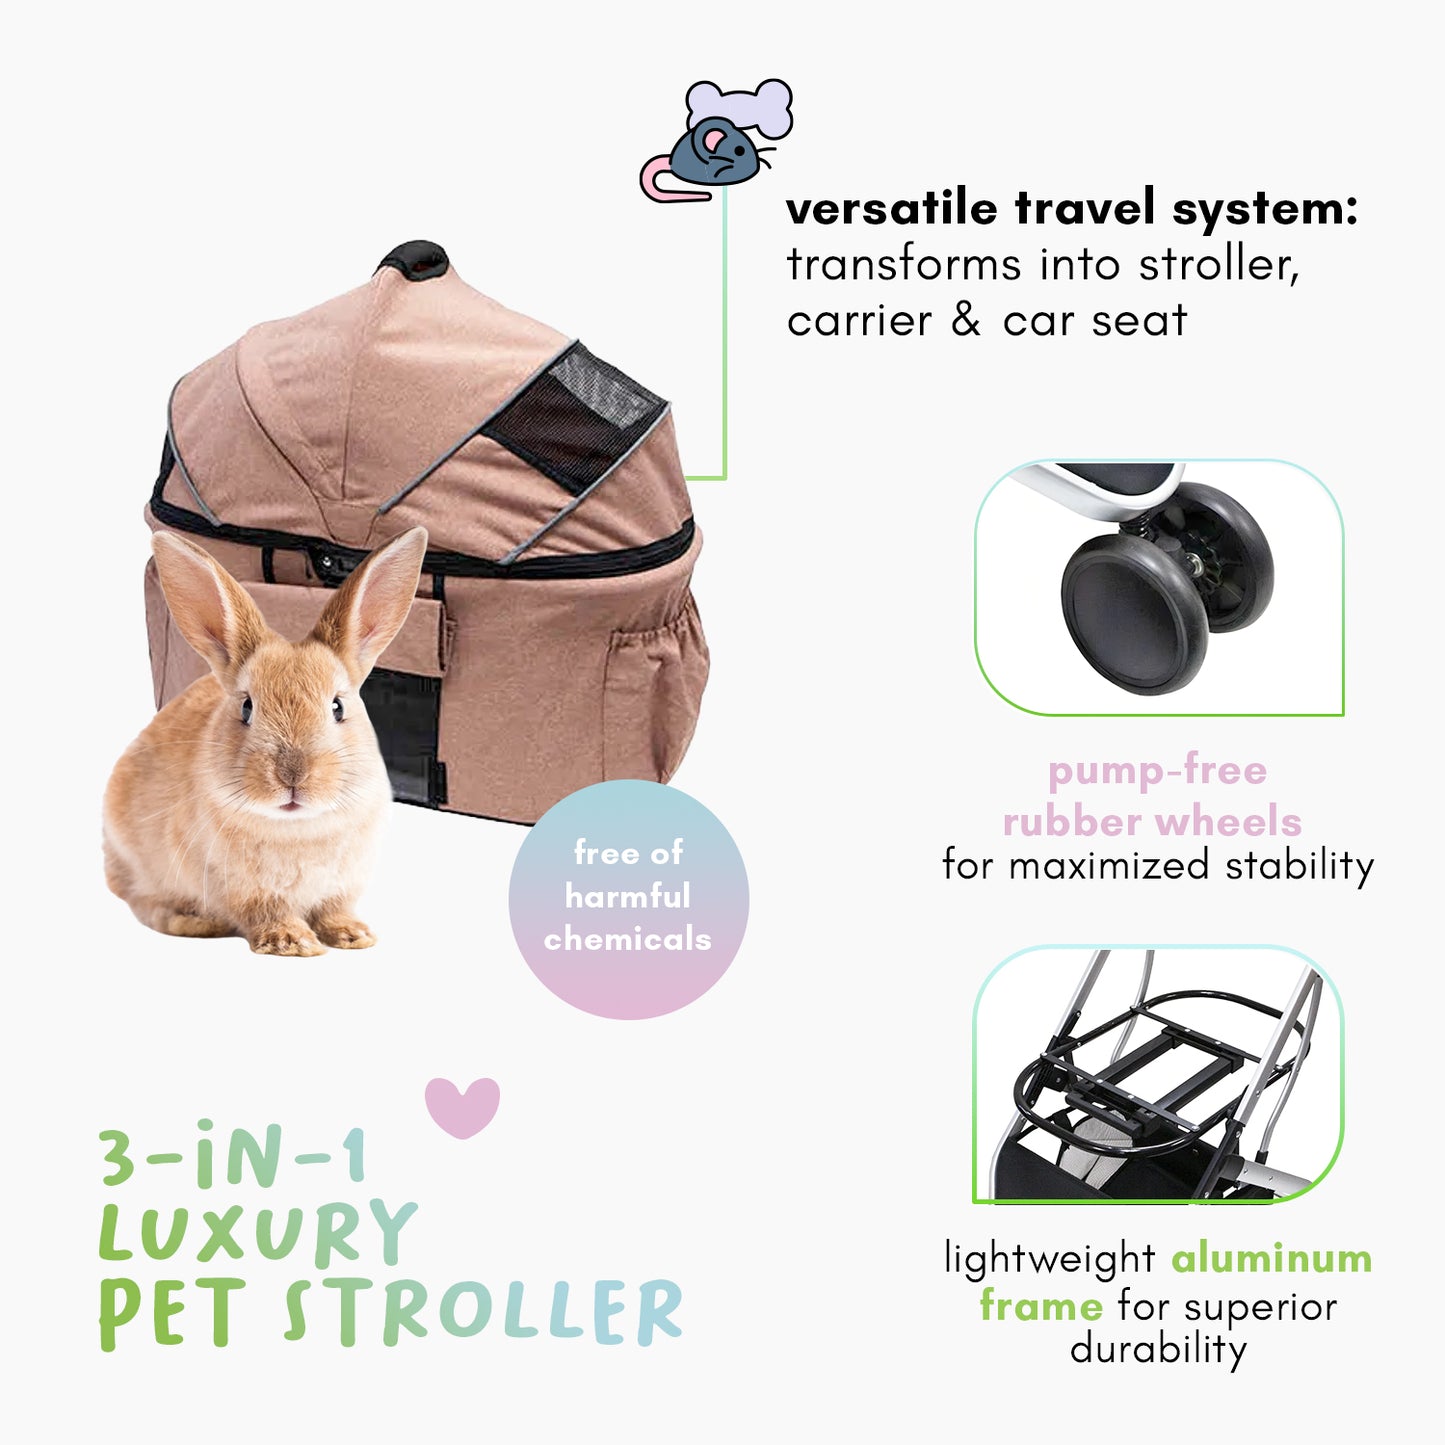 3-in-1 luxury pet stroller